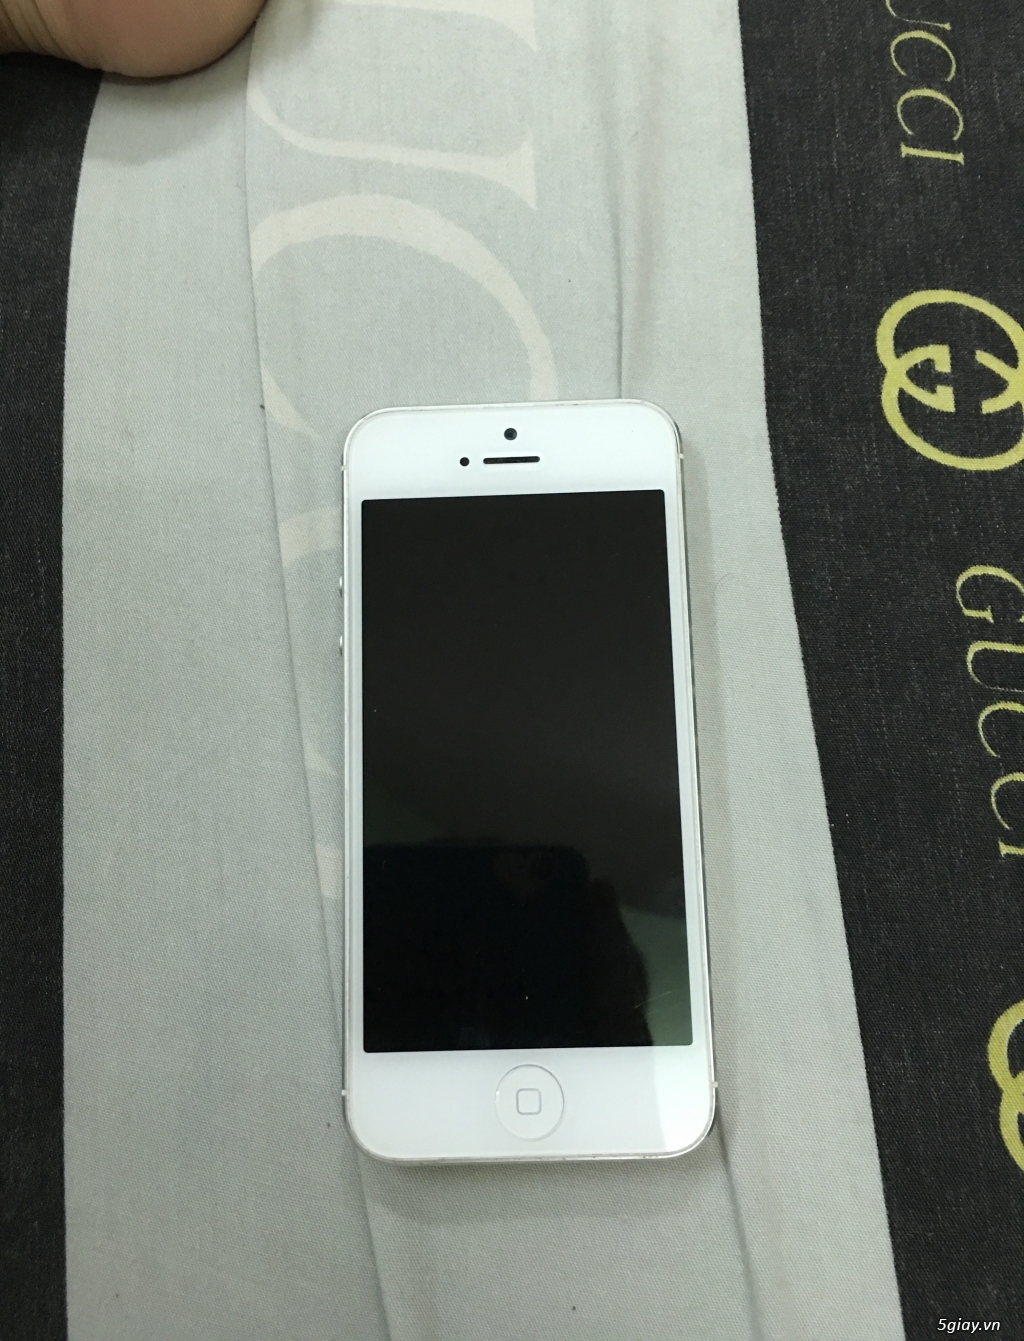 Hcm - Iphone 5 white quốc tế 16gb 98,99% giá 3tr2 - 7